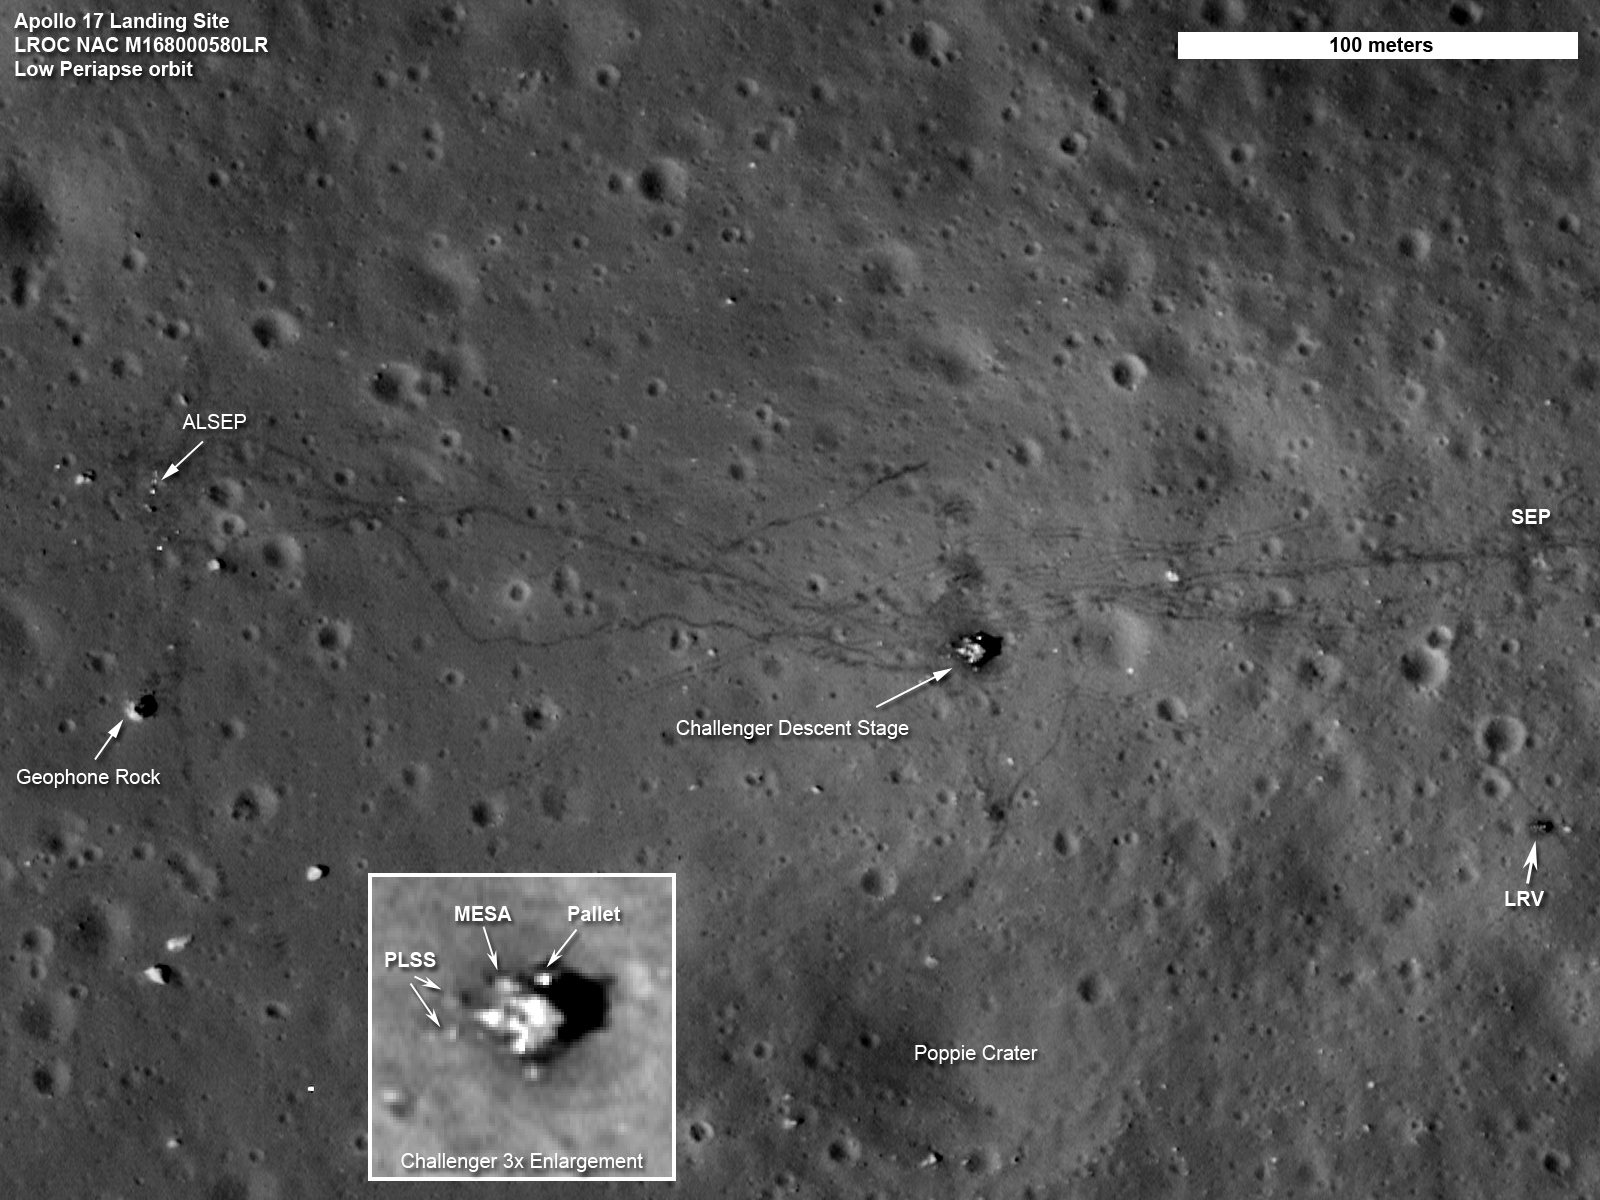 Les traces des missions Apollo sur la Lune